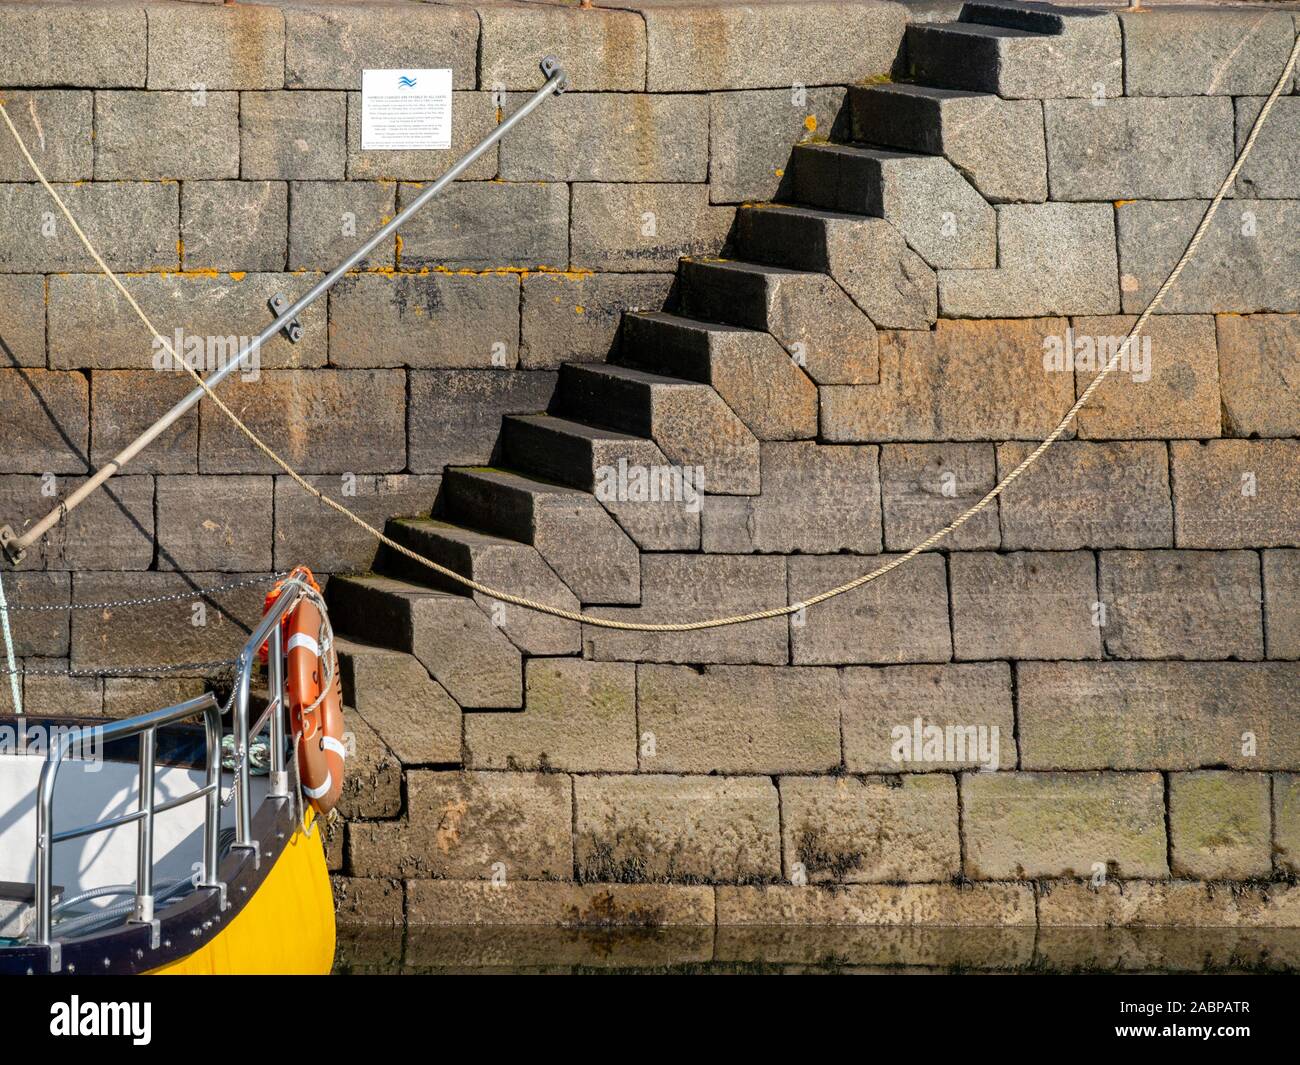 Grande incastro esagonale irregolare dei blocchi di granito fasi di formatura della parete di Scalasaig molo del porto, Isola di Colonsay, Scotland, Regno Unito Foto Stock